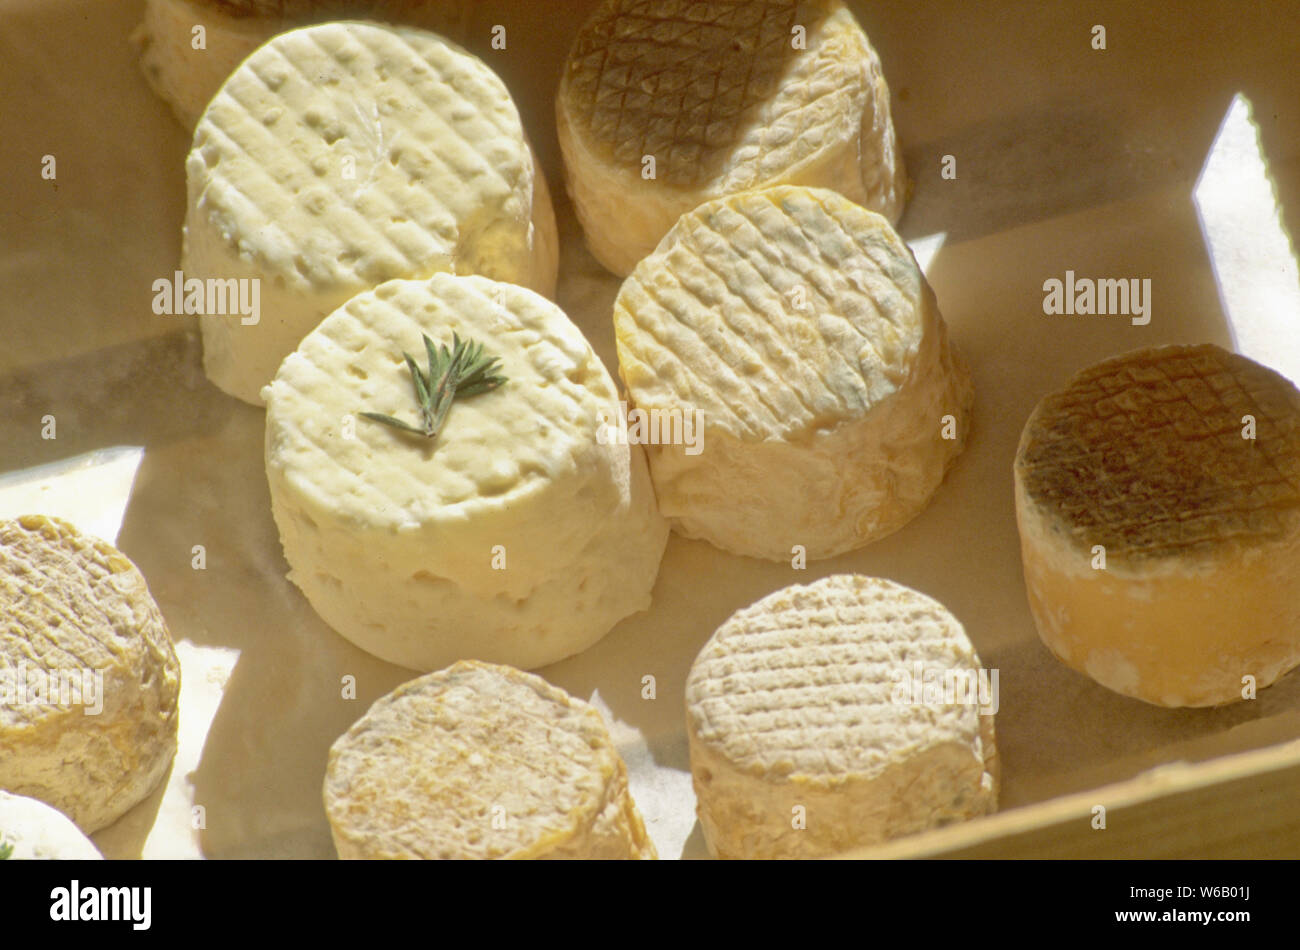 Le fromage de chèvre est une variété tendre de fromages fabriqués dans la région des Alpilles en Provence. Banque D'Images